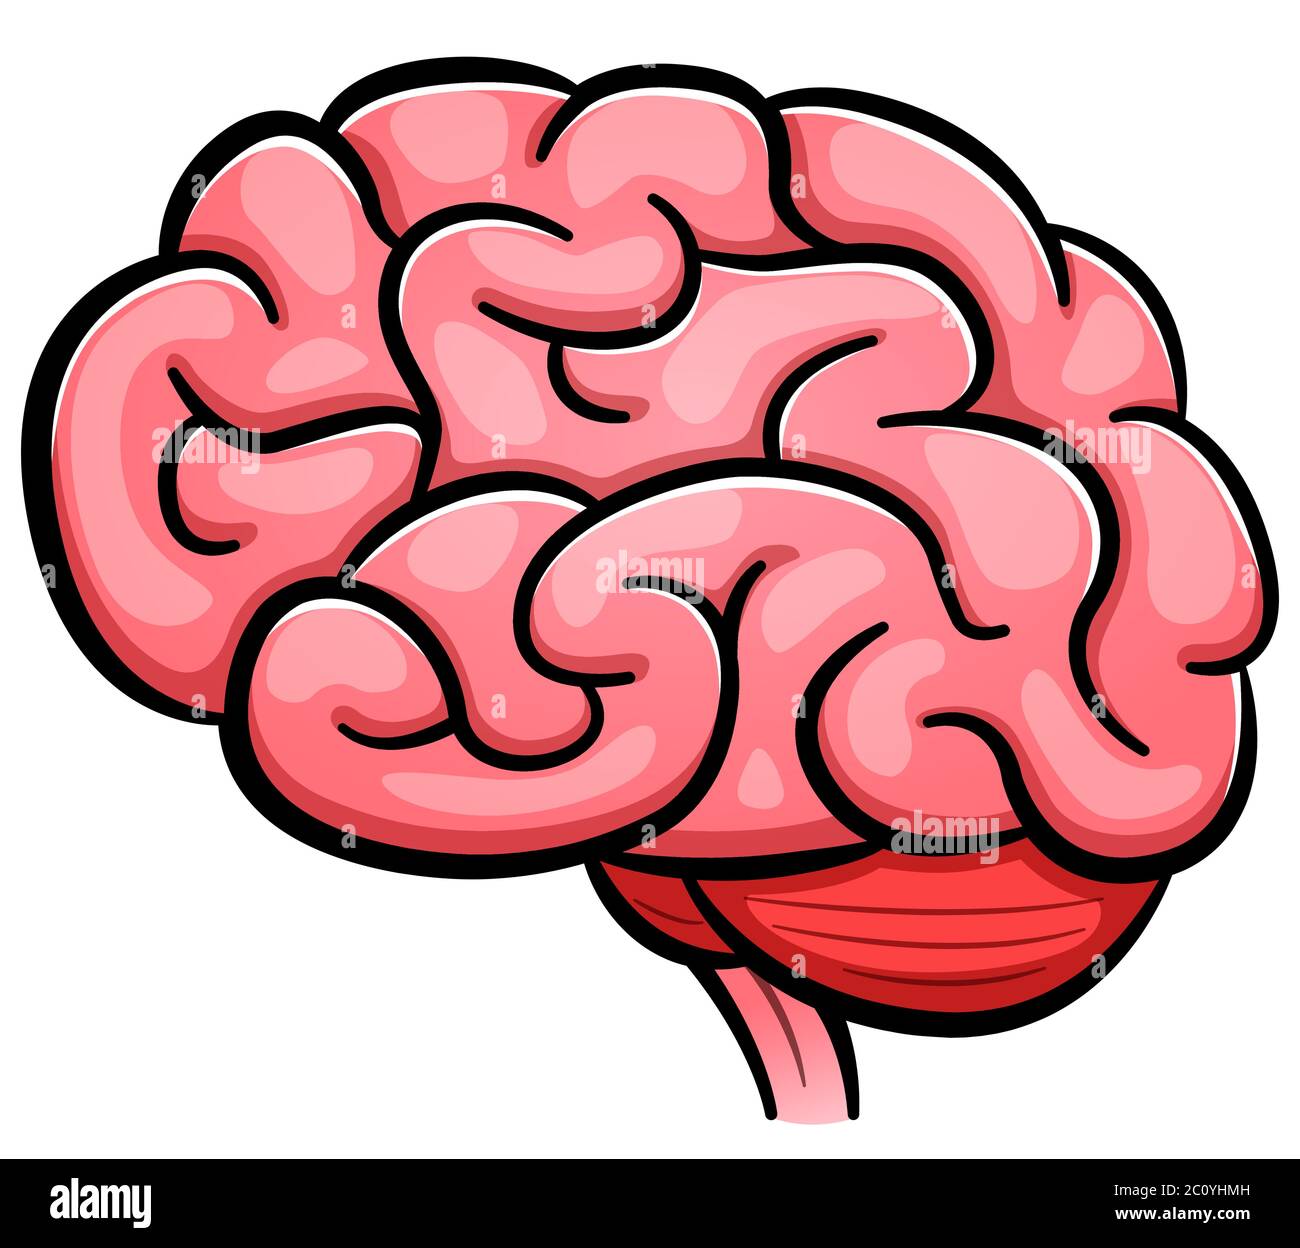 Illustrazione vettoriale di fumetto cerebrale umano isolato Illustrazione Vettoriale